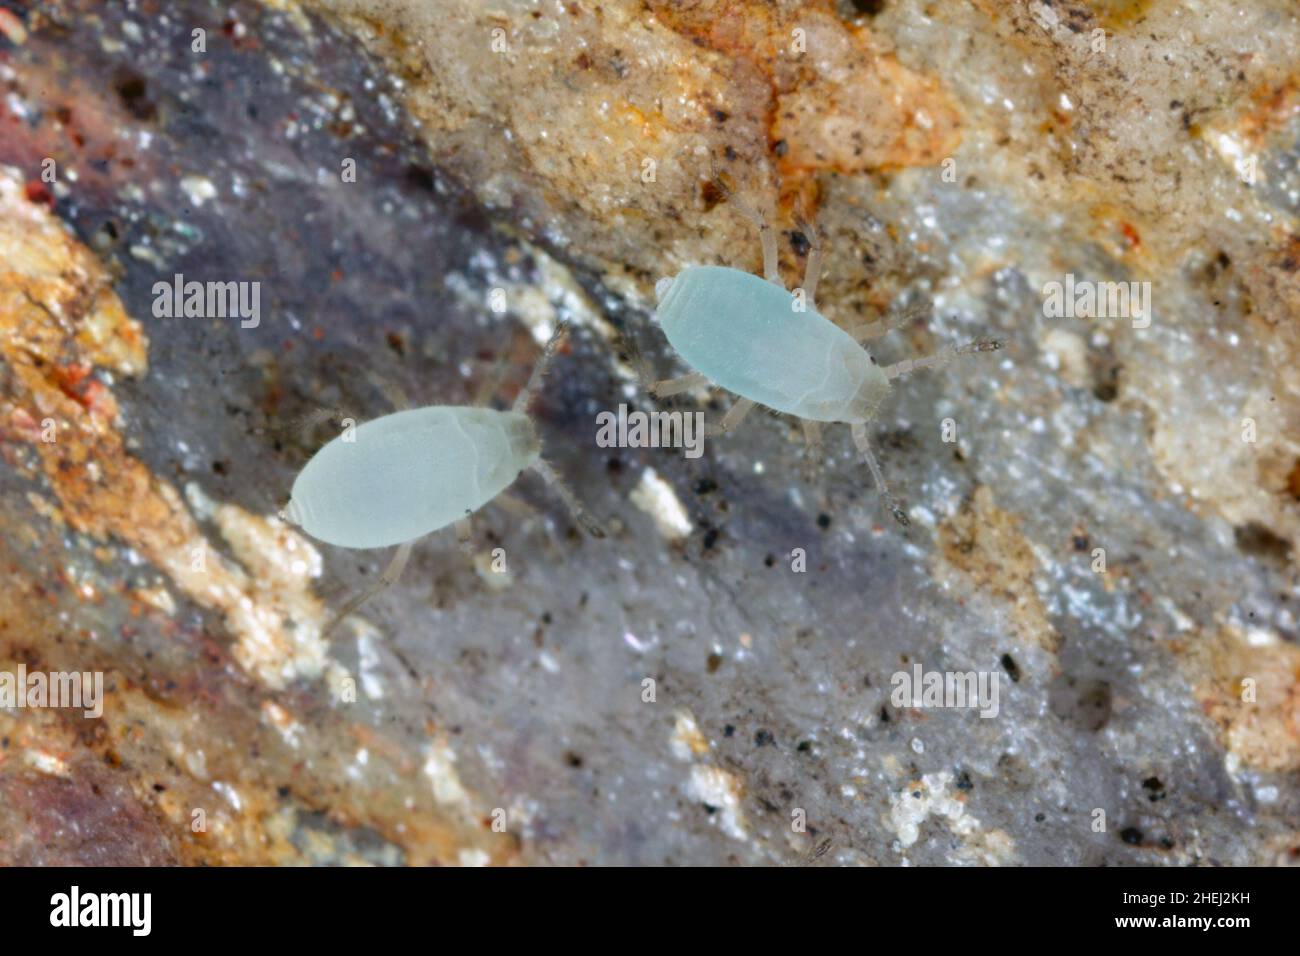 Unterirdische Blattläuse, die unter einem Stein im Garten gefunden wurden. Hohe Vergrößerung. Stockfoto